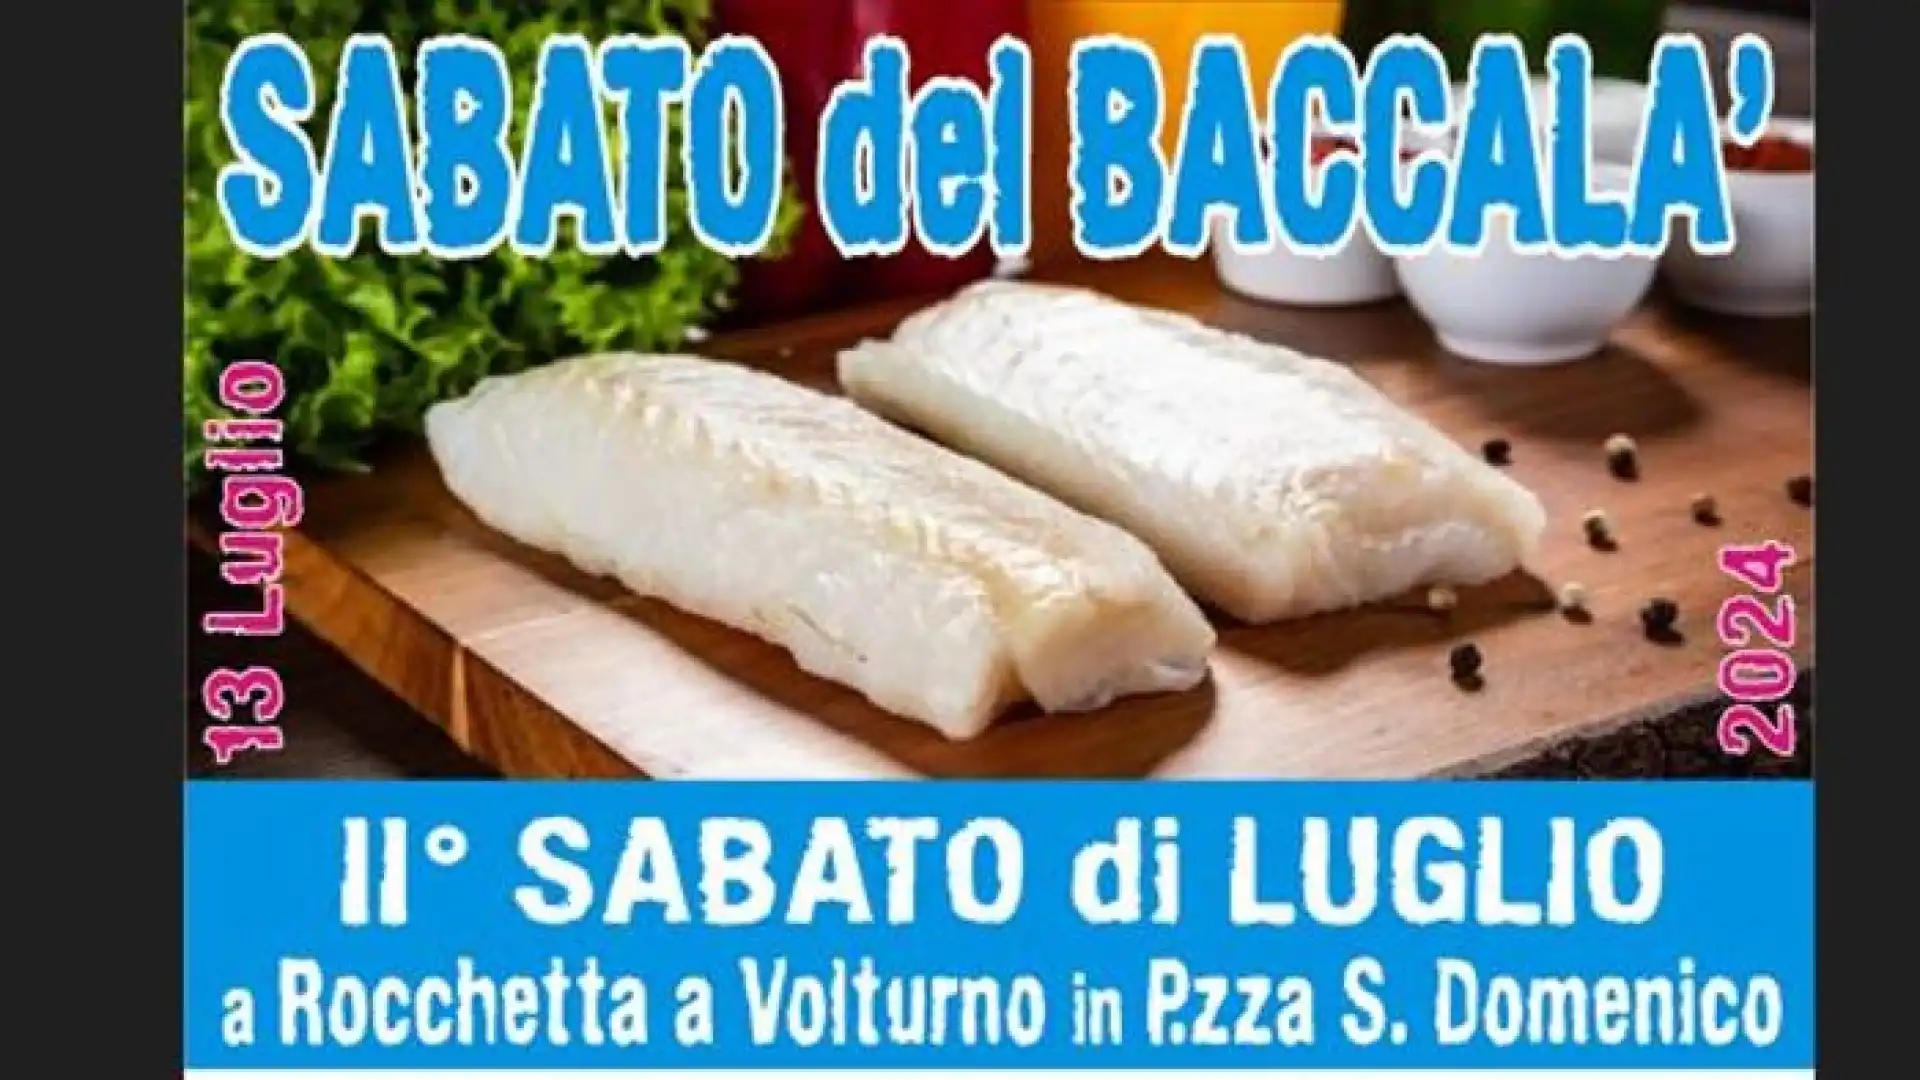 Rocchetta a Volturno: il 13 luglio il “Sabato del Baccala’ “. Appuntamento con il gusto e la tradizione in Piazza San Domenico. Al via le prenotazioni.